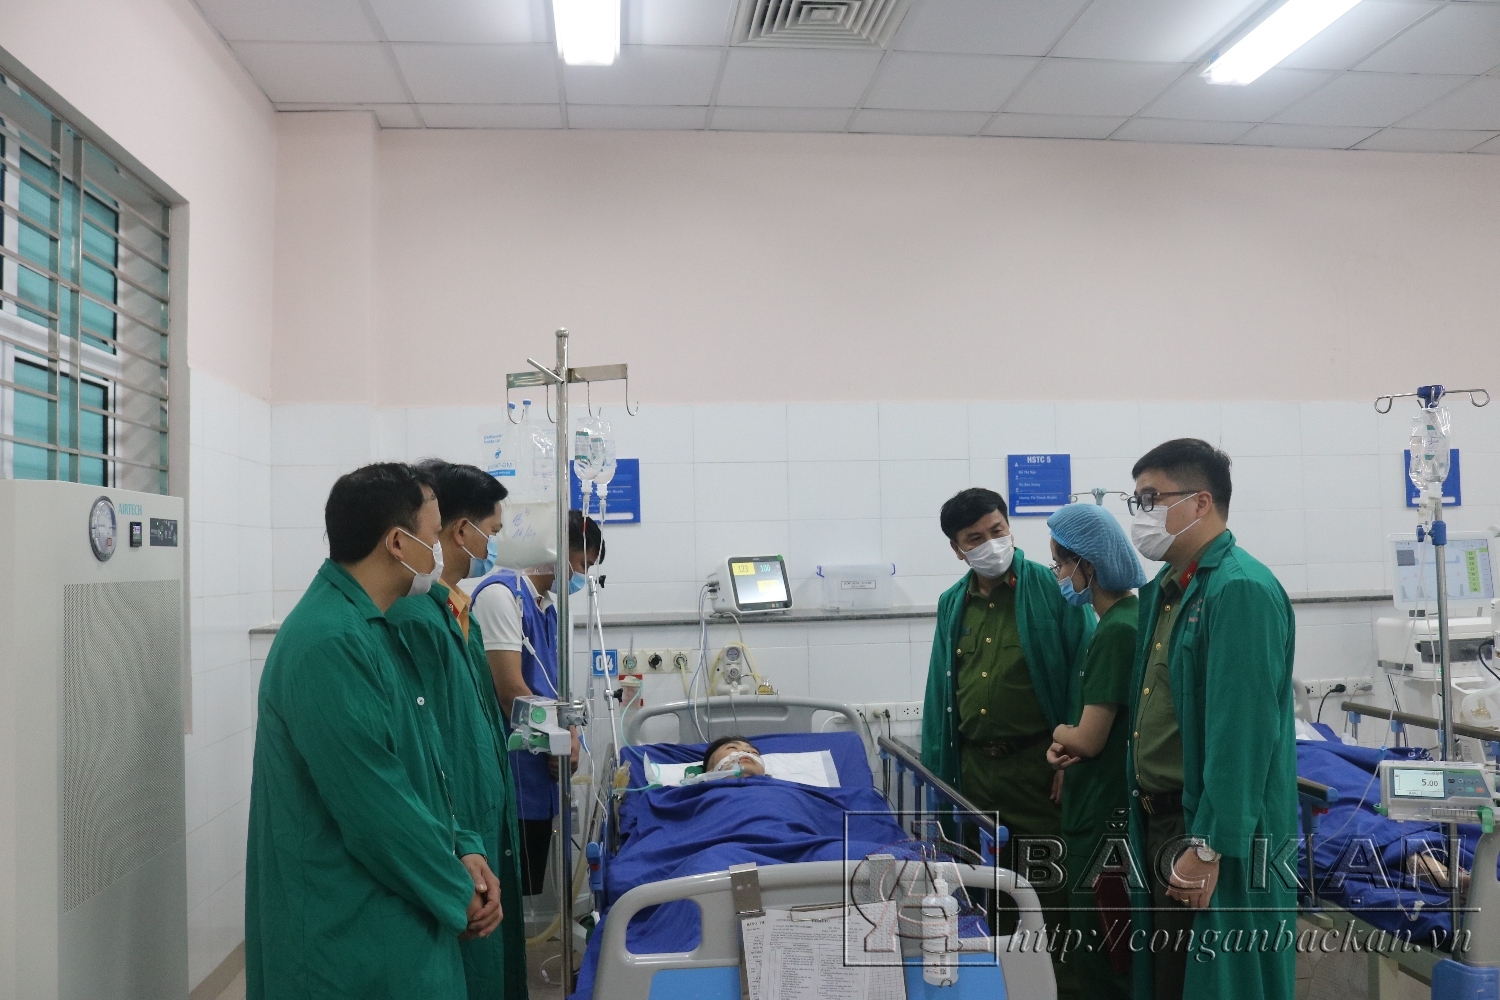 Đại tá Nguyễn Thanh Tuân – Phó Giám đốc Công an tỉnh cùng đoàn thăm hỏi động viên và tặng quà cho đồng chí Dương Xuân Kiệm tại Bệnh viện đa khoa Trung ương Thái Nguyên